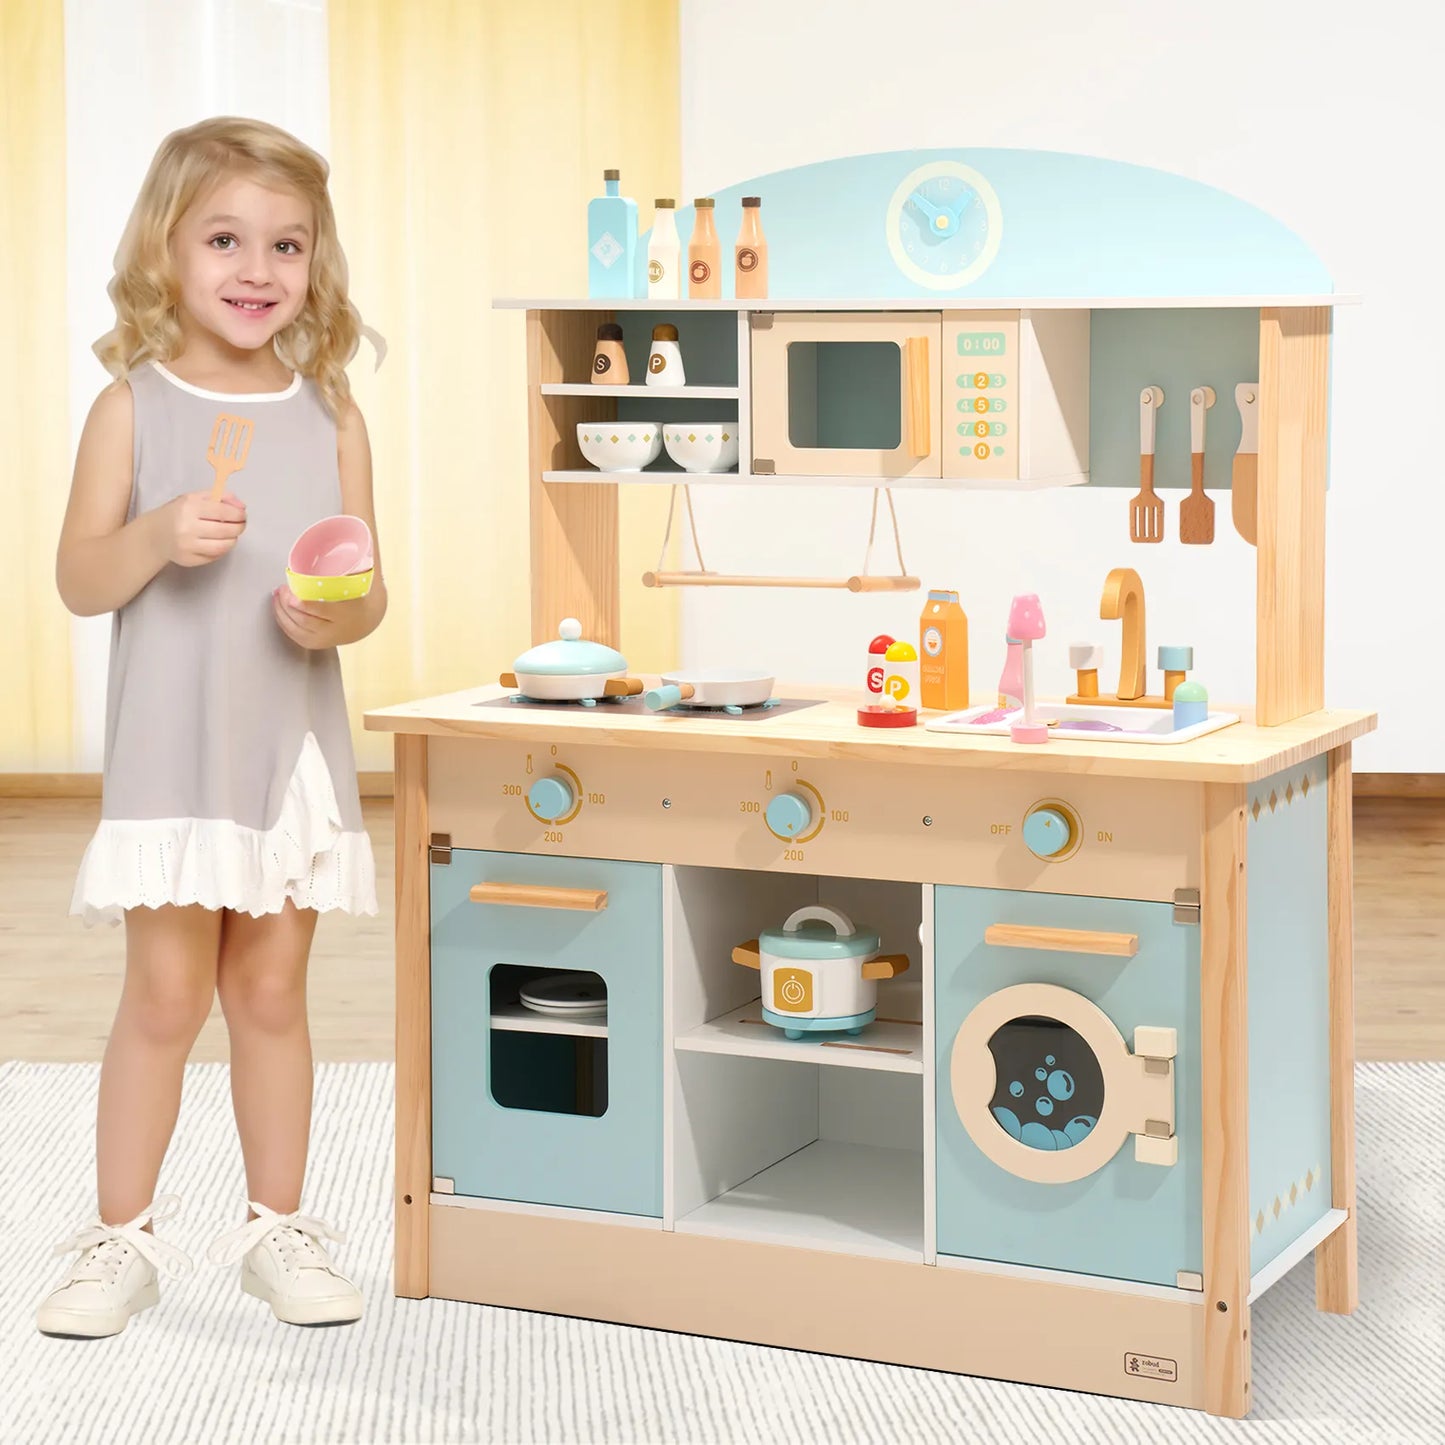 Spielküchenset aus Holz für Kinder und Kleinkinder – preisgünstig